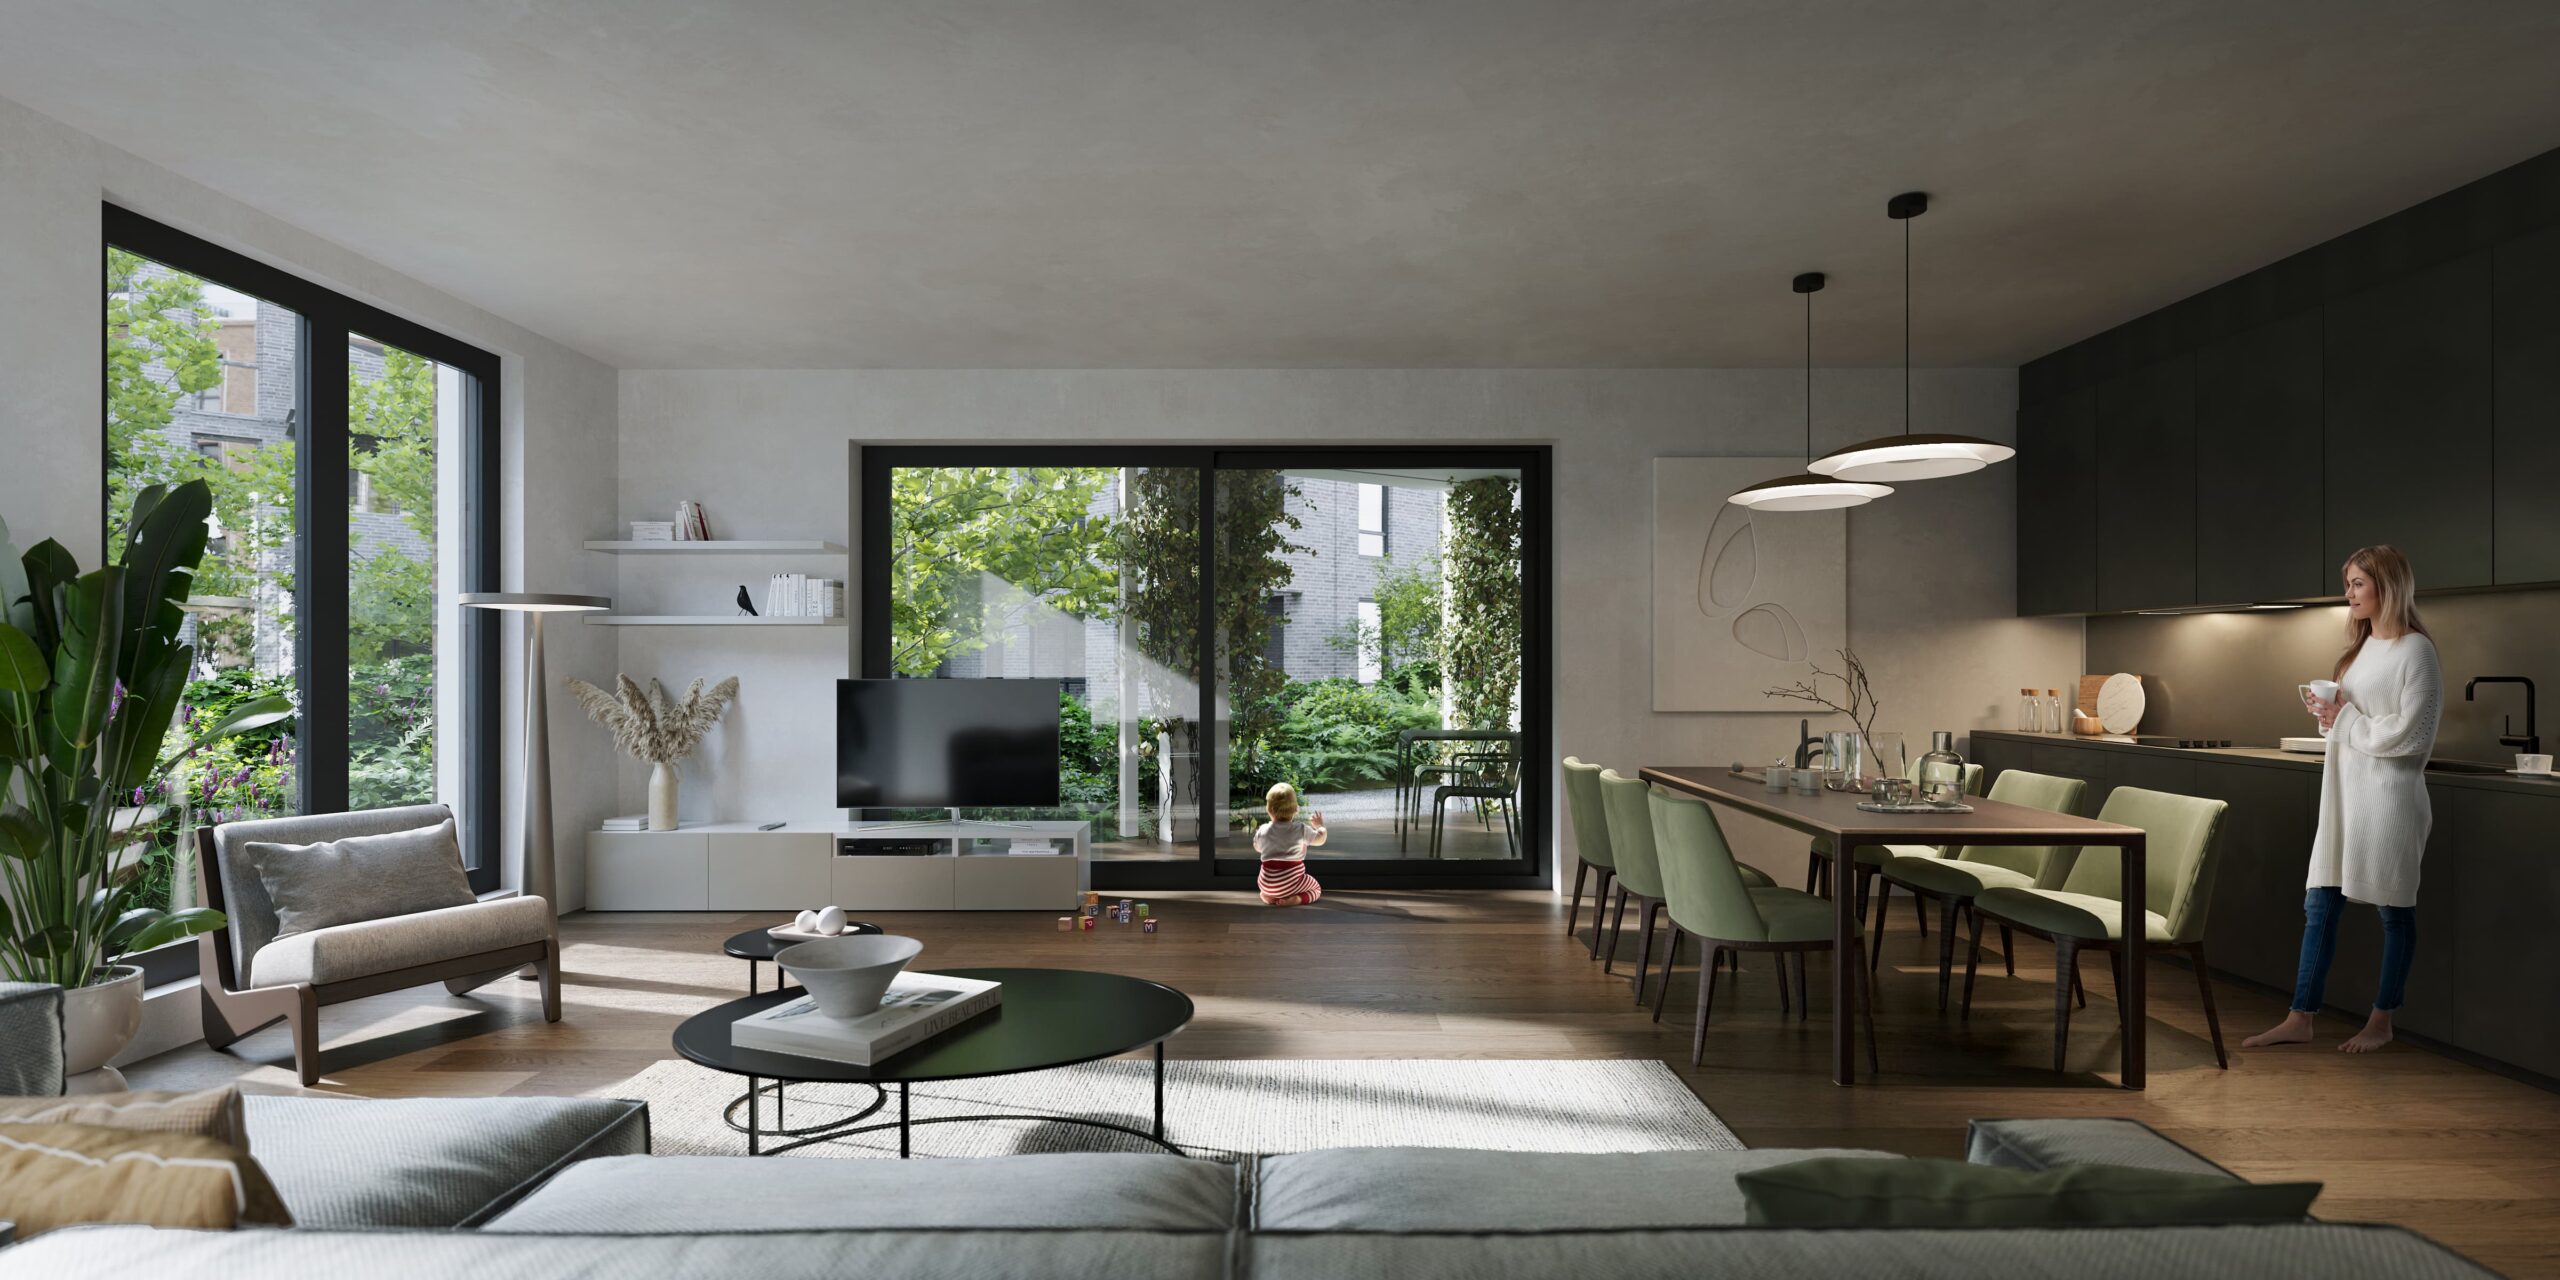 Interieur | Ivy Apartments | Huurwoning | Huur appartement Nieuwegein